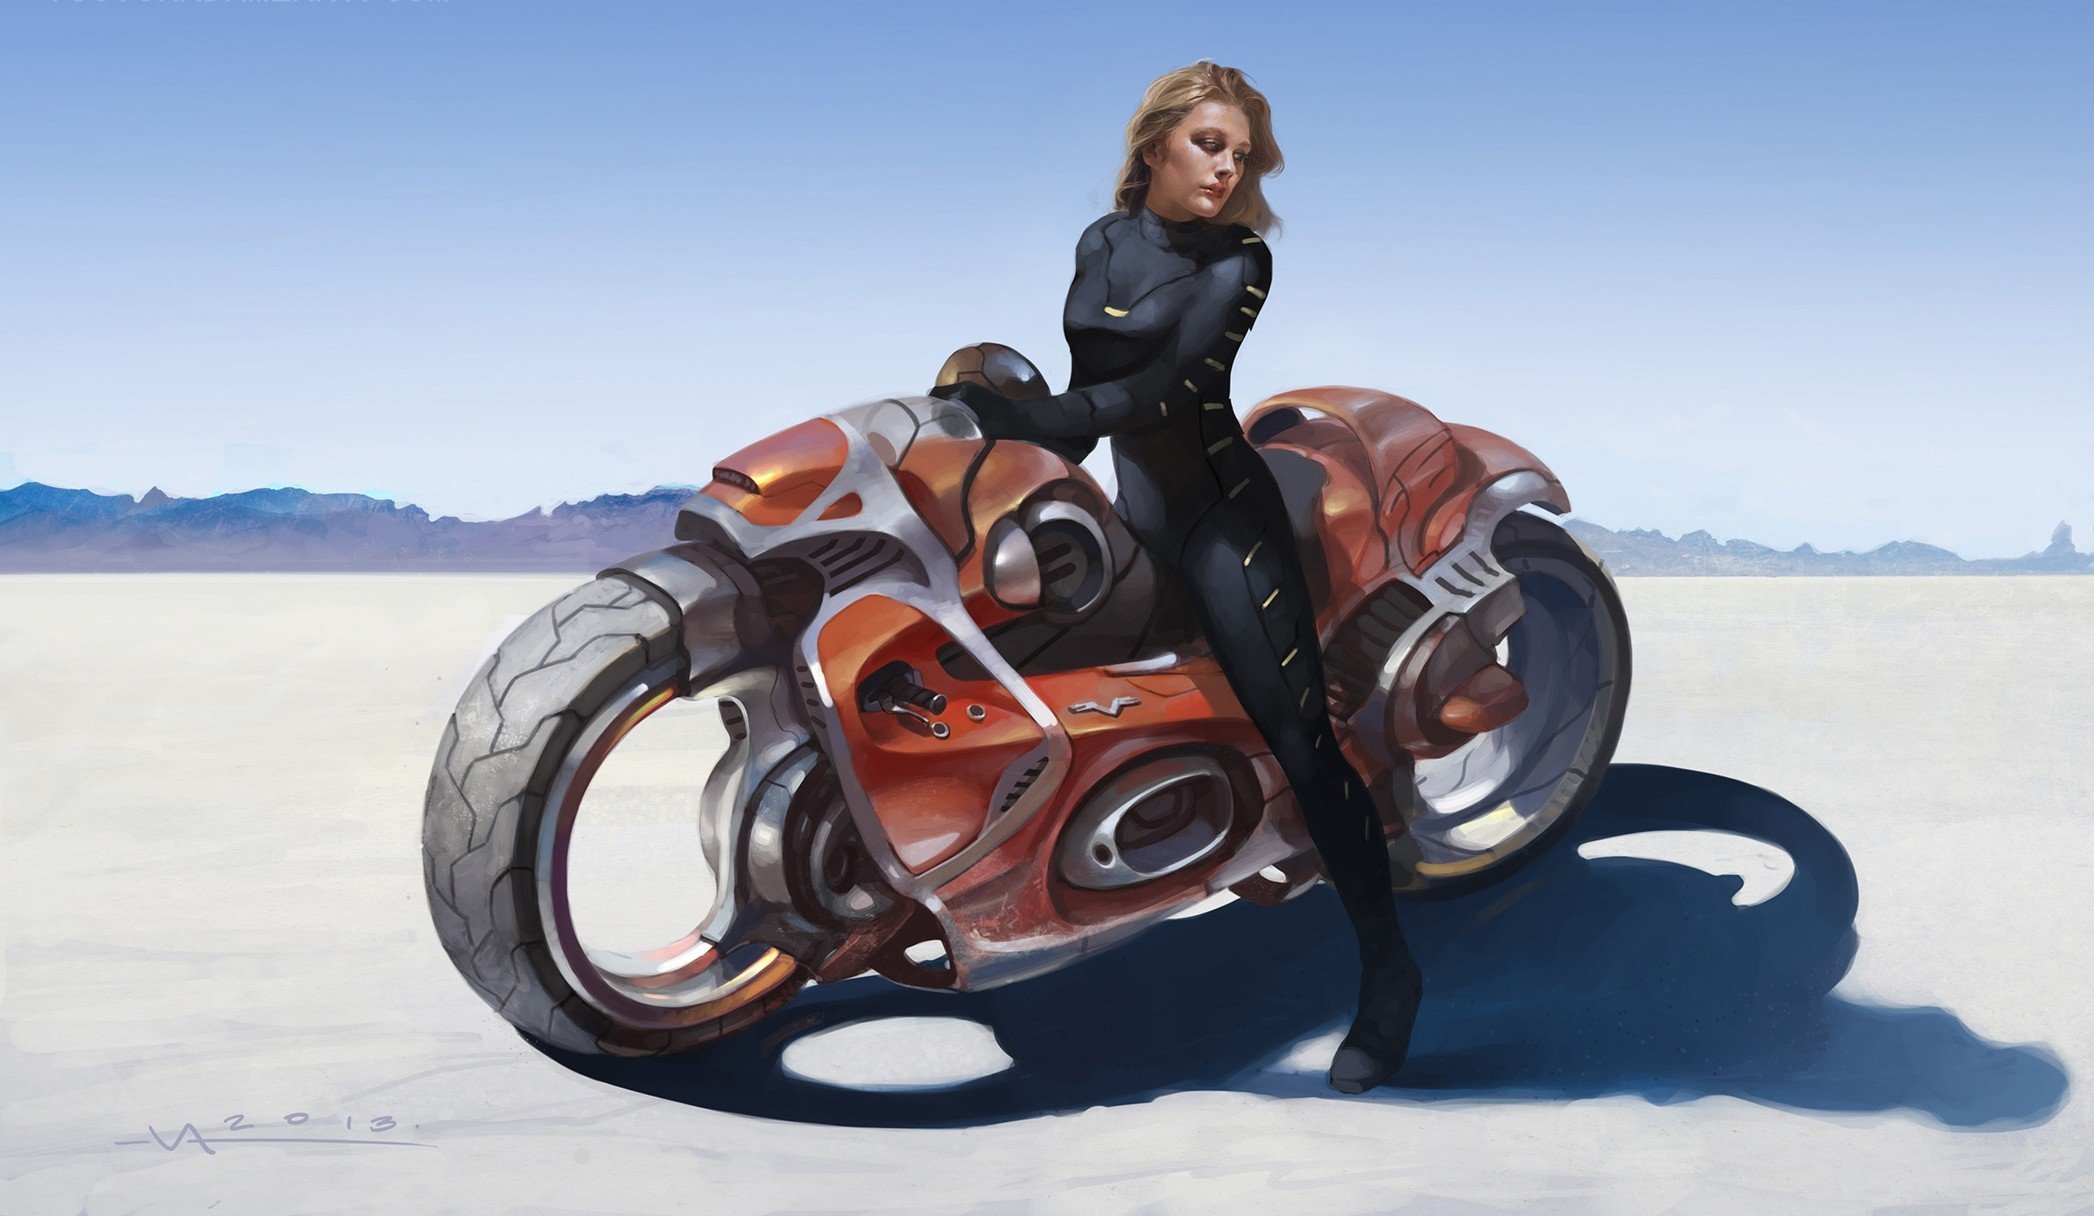 Cyberpunk motorcycle art фото 88